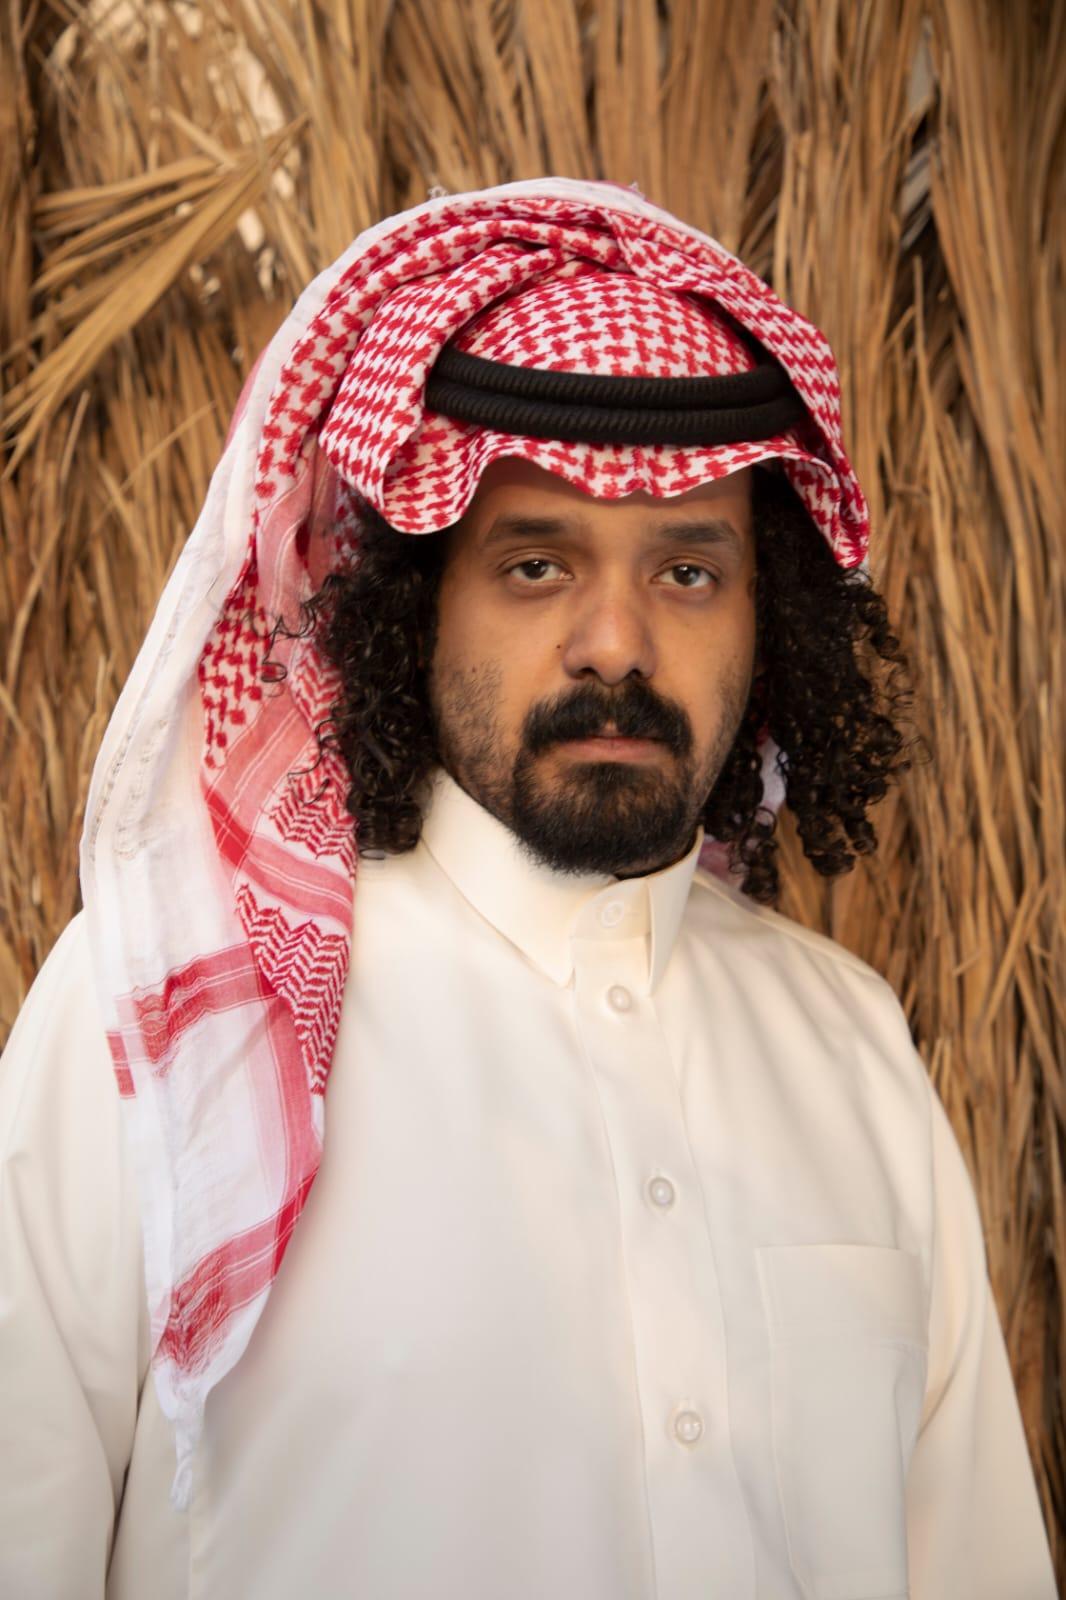 مؤيد النفيعي أول مغني راب سعودي يمزج الشعر العربي بالهيب هوب في ألبوم “بطن الشاعر”